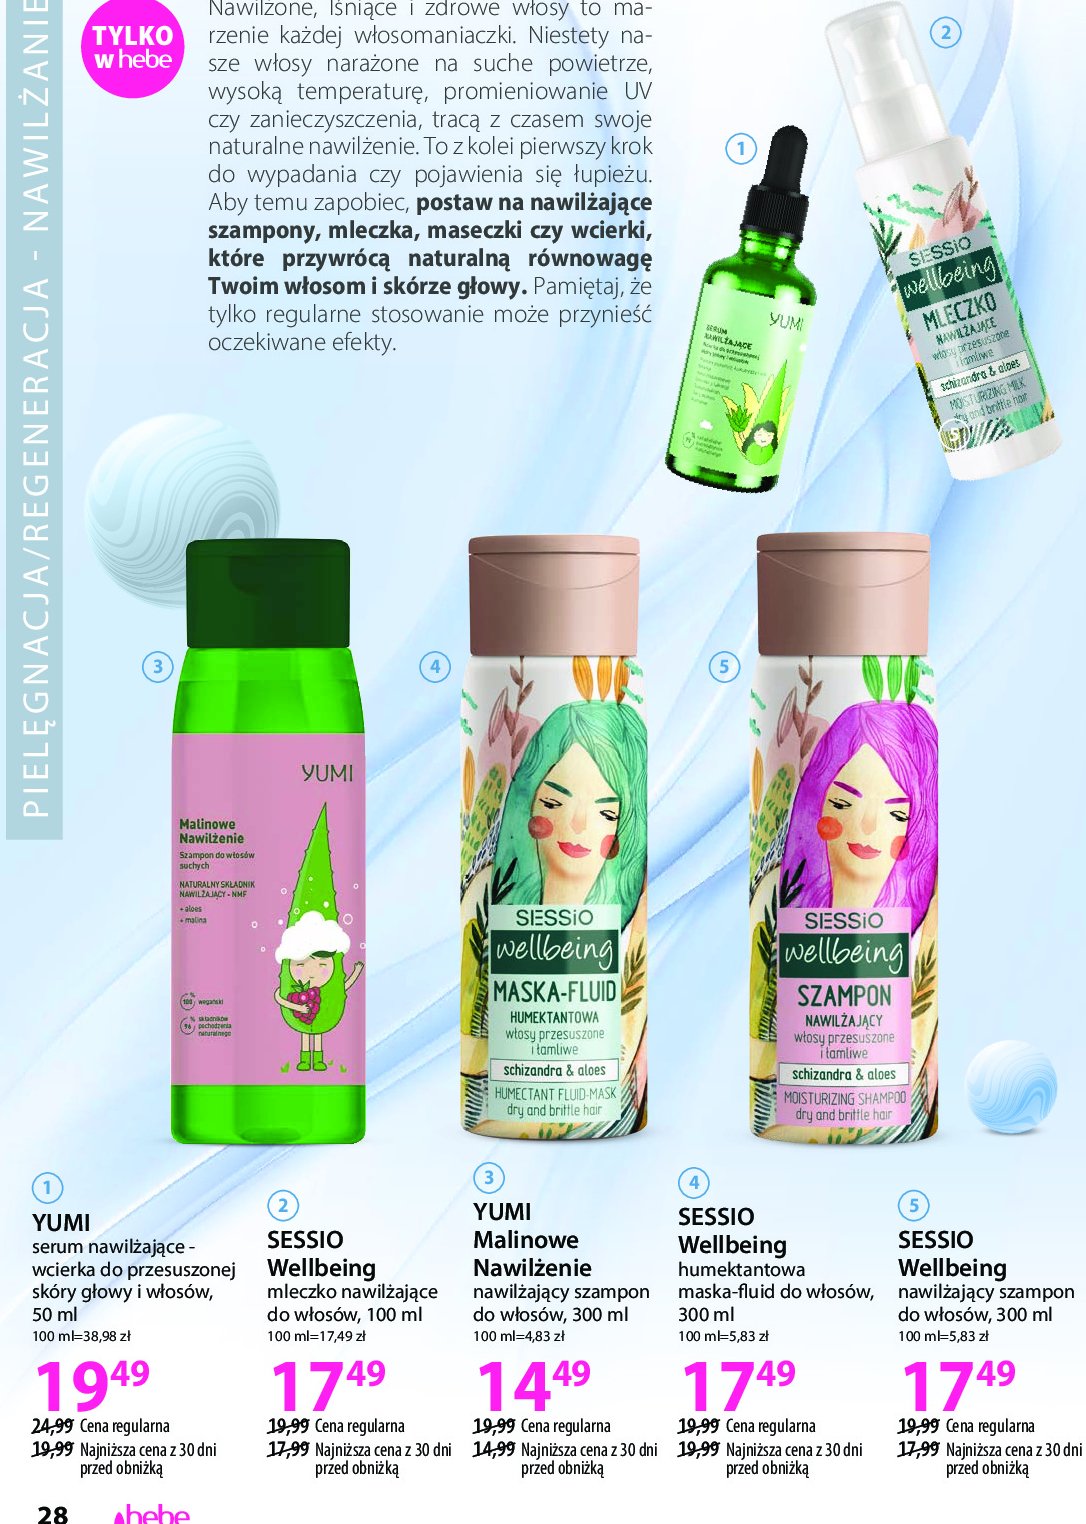 Serum przyśpieszające Yumi cosmetics promocja